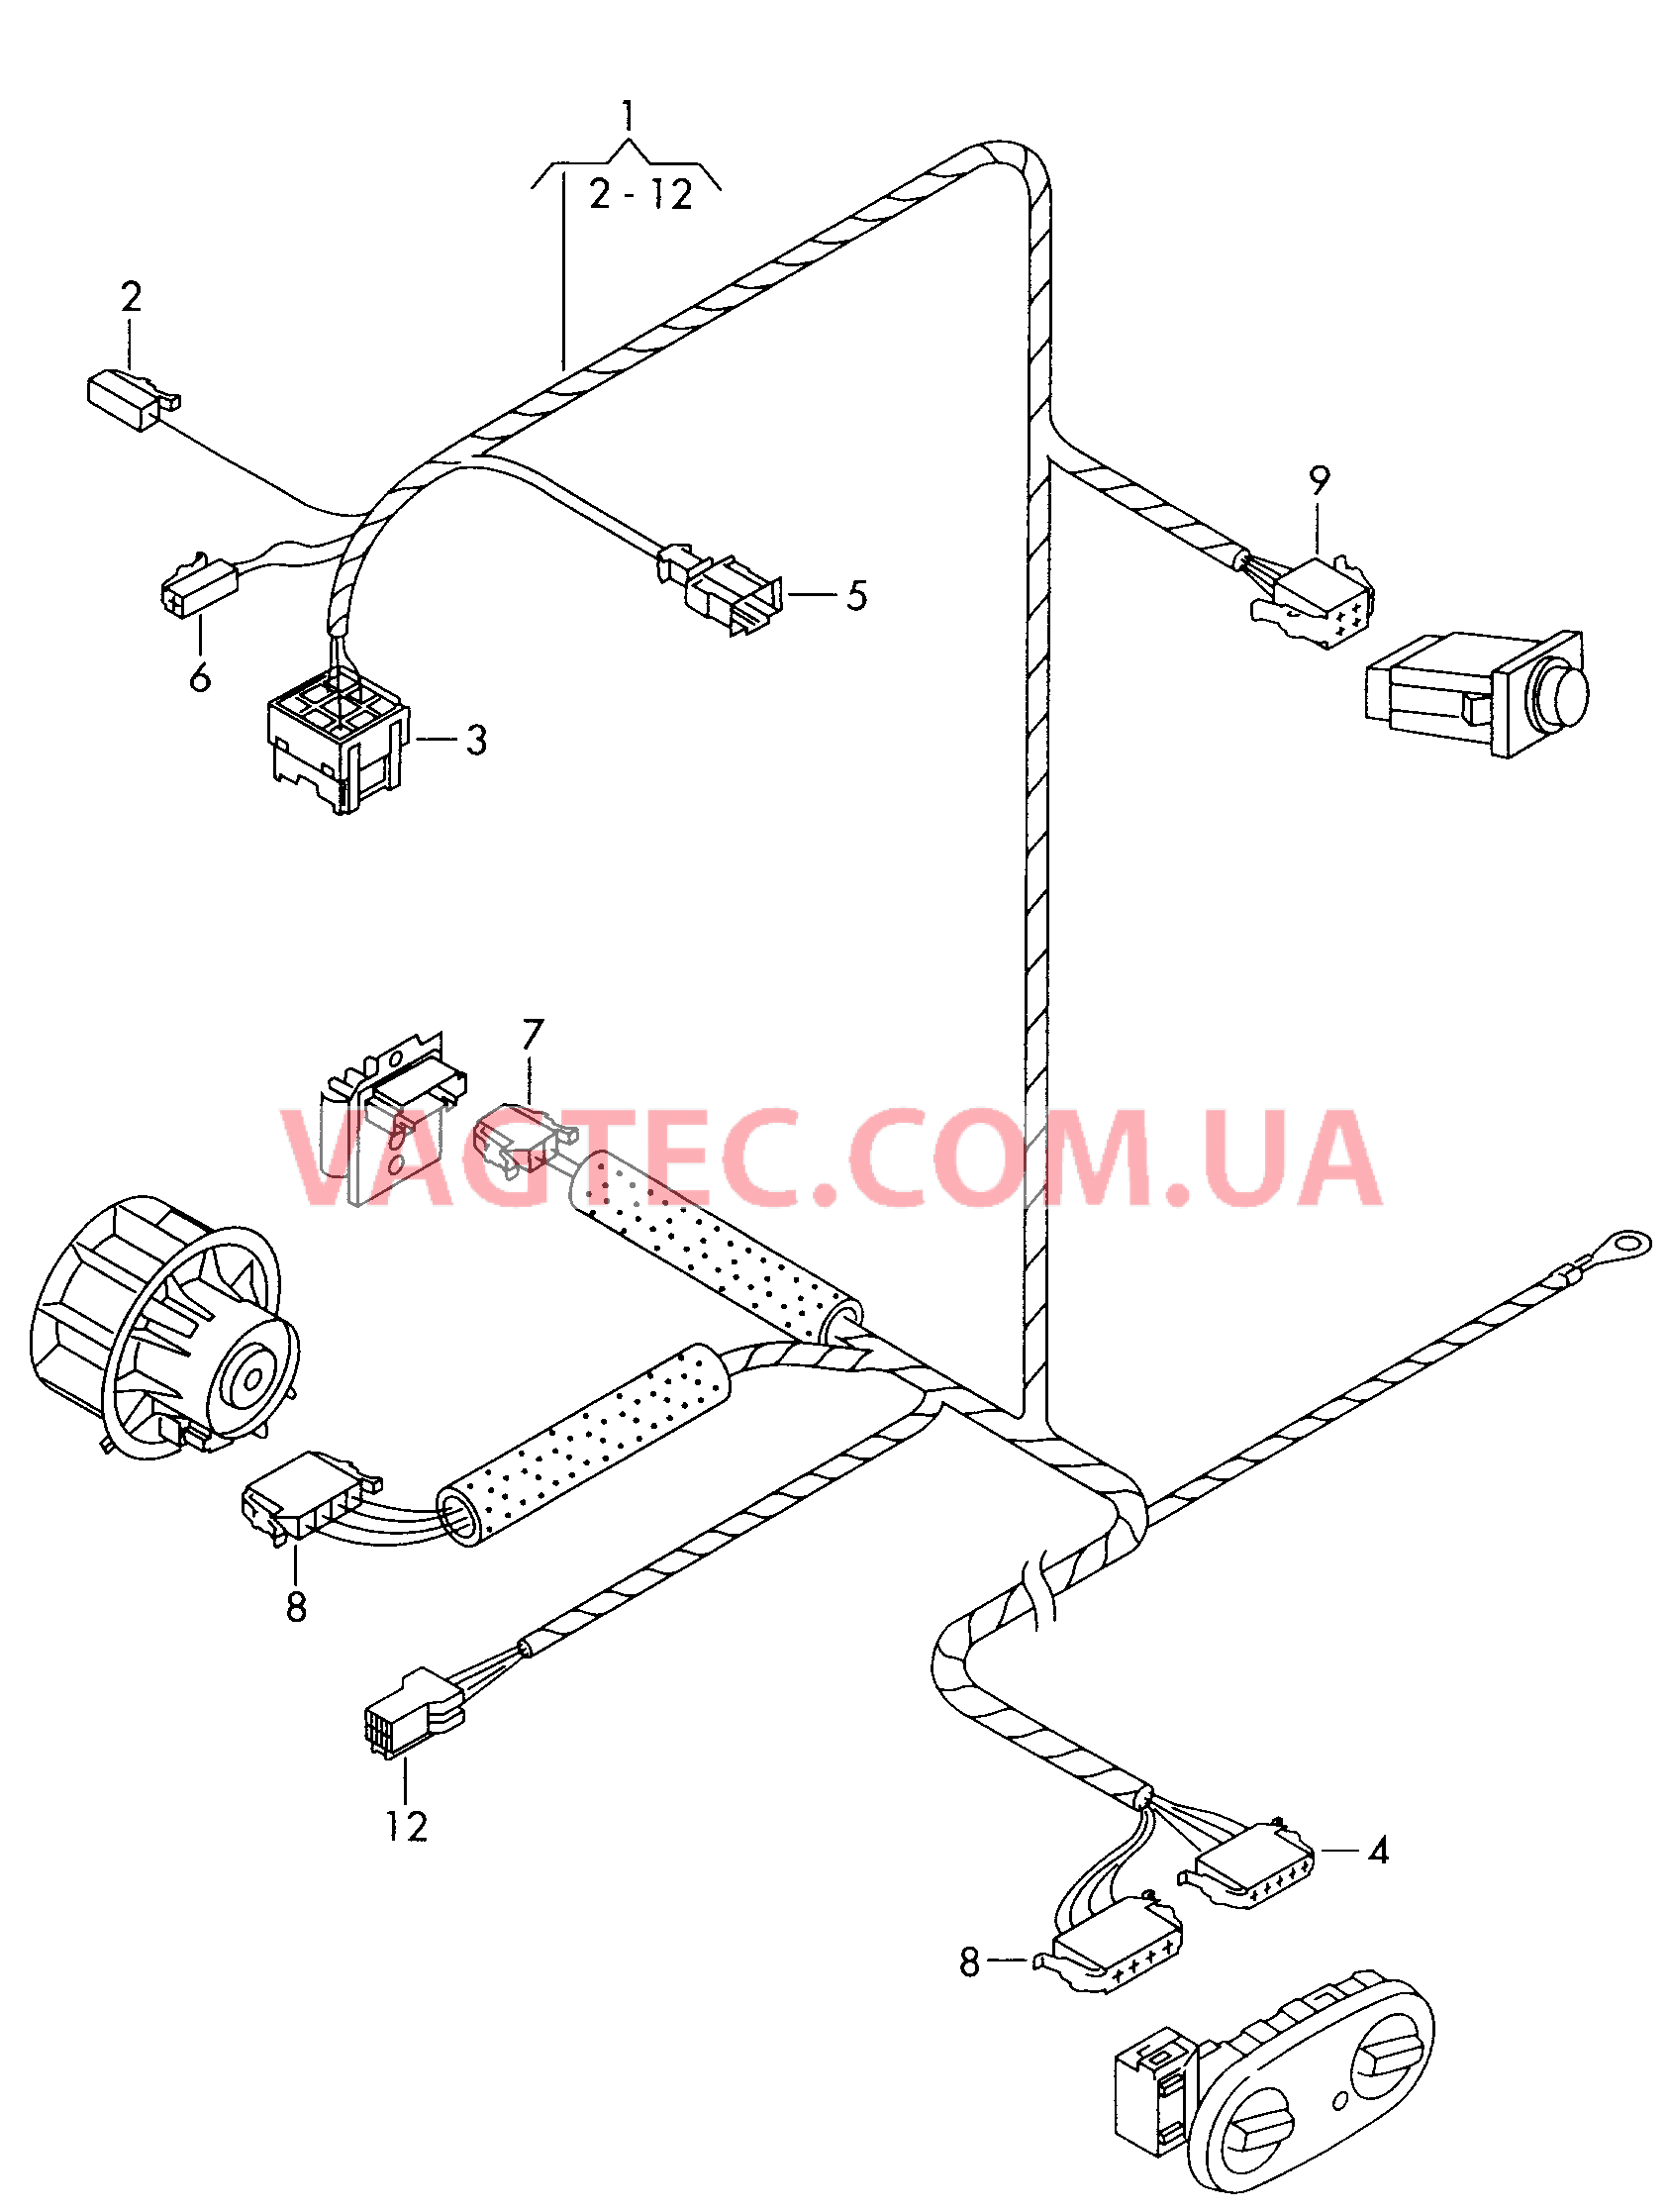 Жгут проводов для а/м со вторым теплообменником  Кондиционер с электронной регулировкой  см. панель иллюстраций: F             >> 7M-W-507 060 F 7M-W-507 061>> для SEAT Alhambra 2000